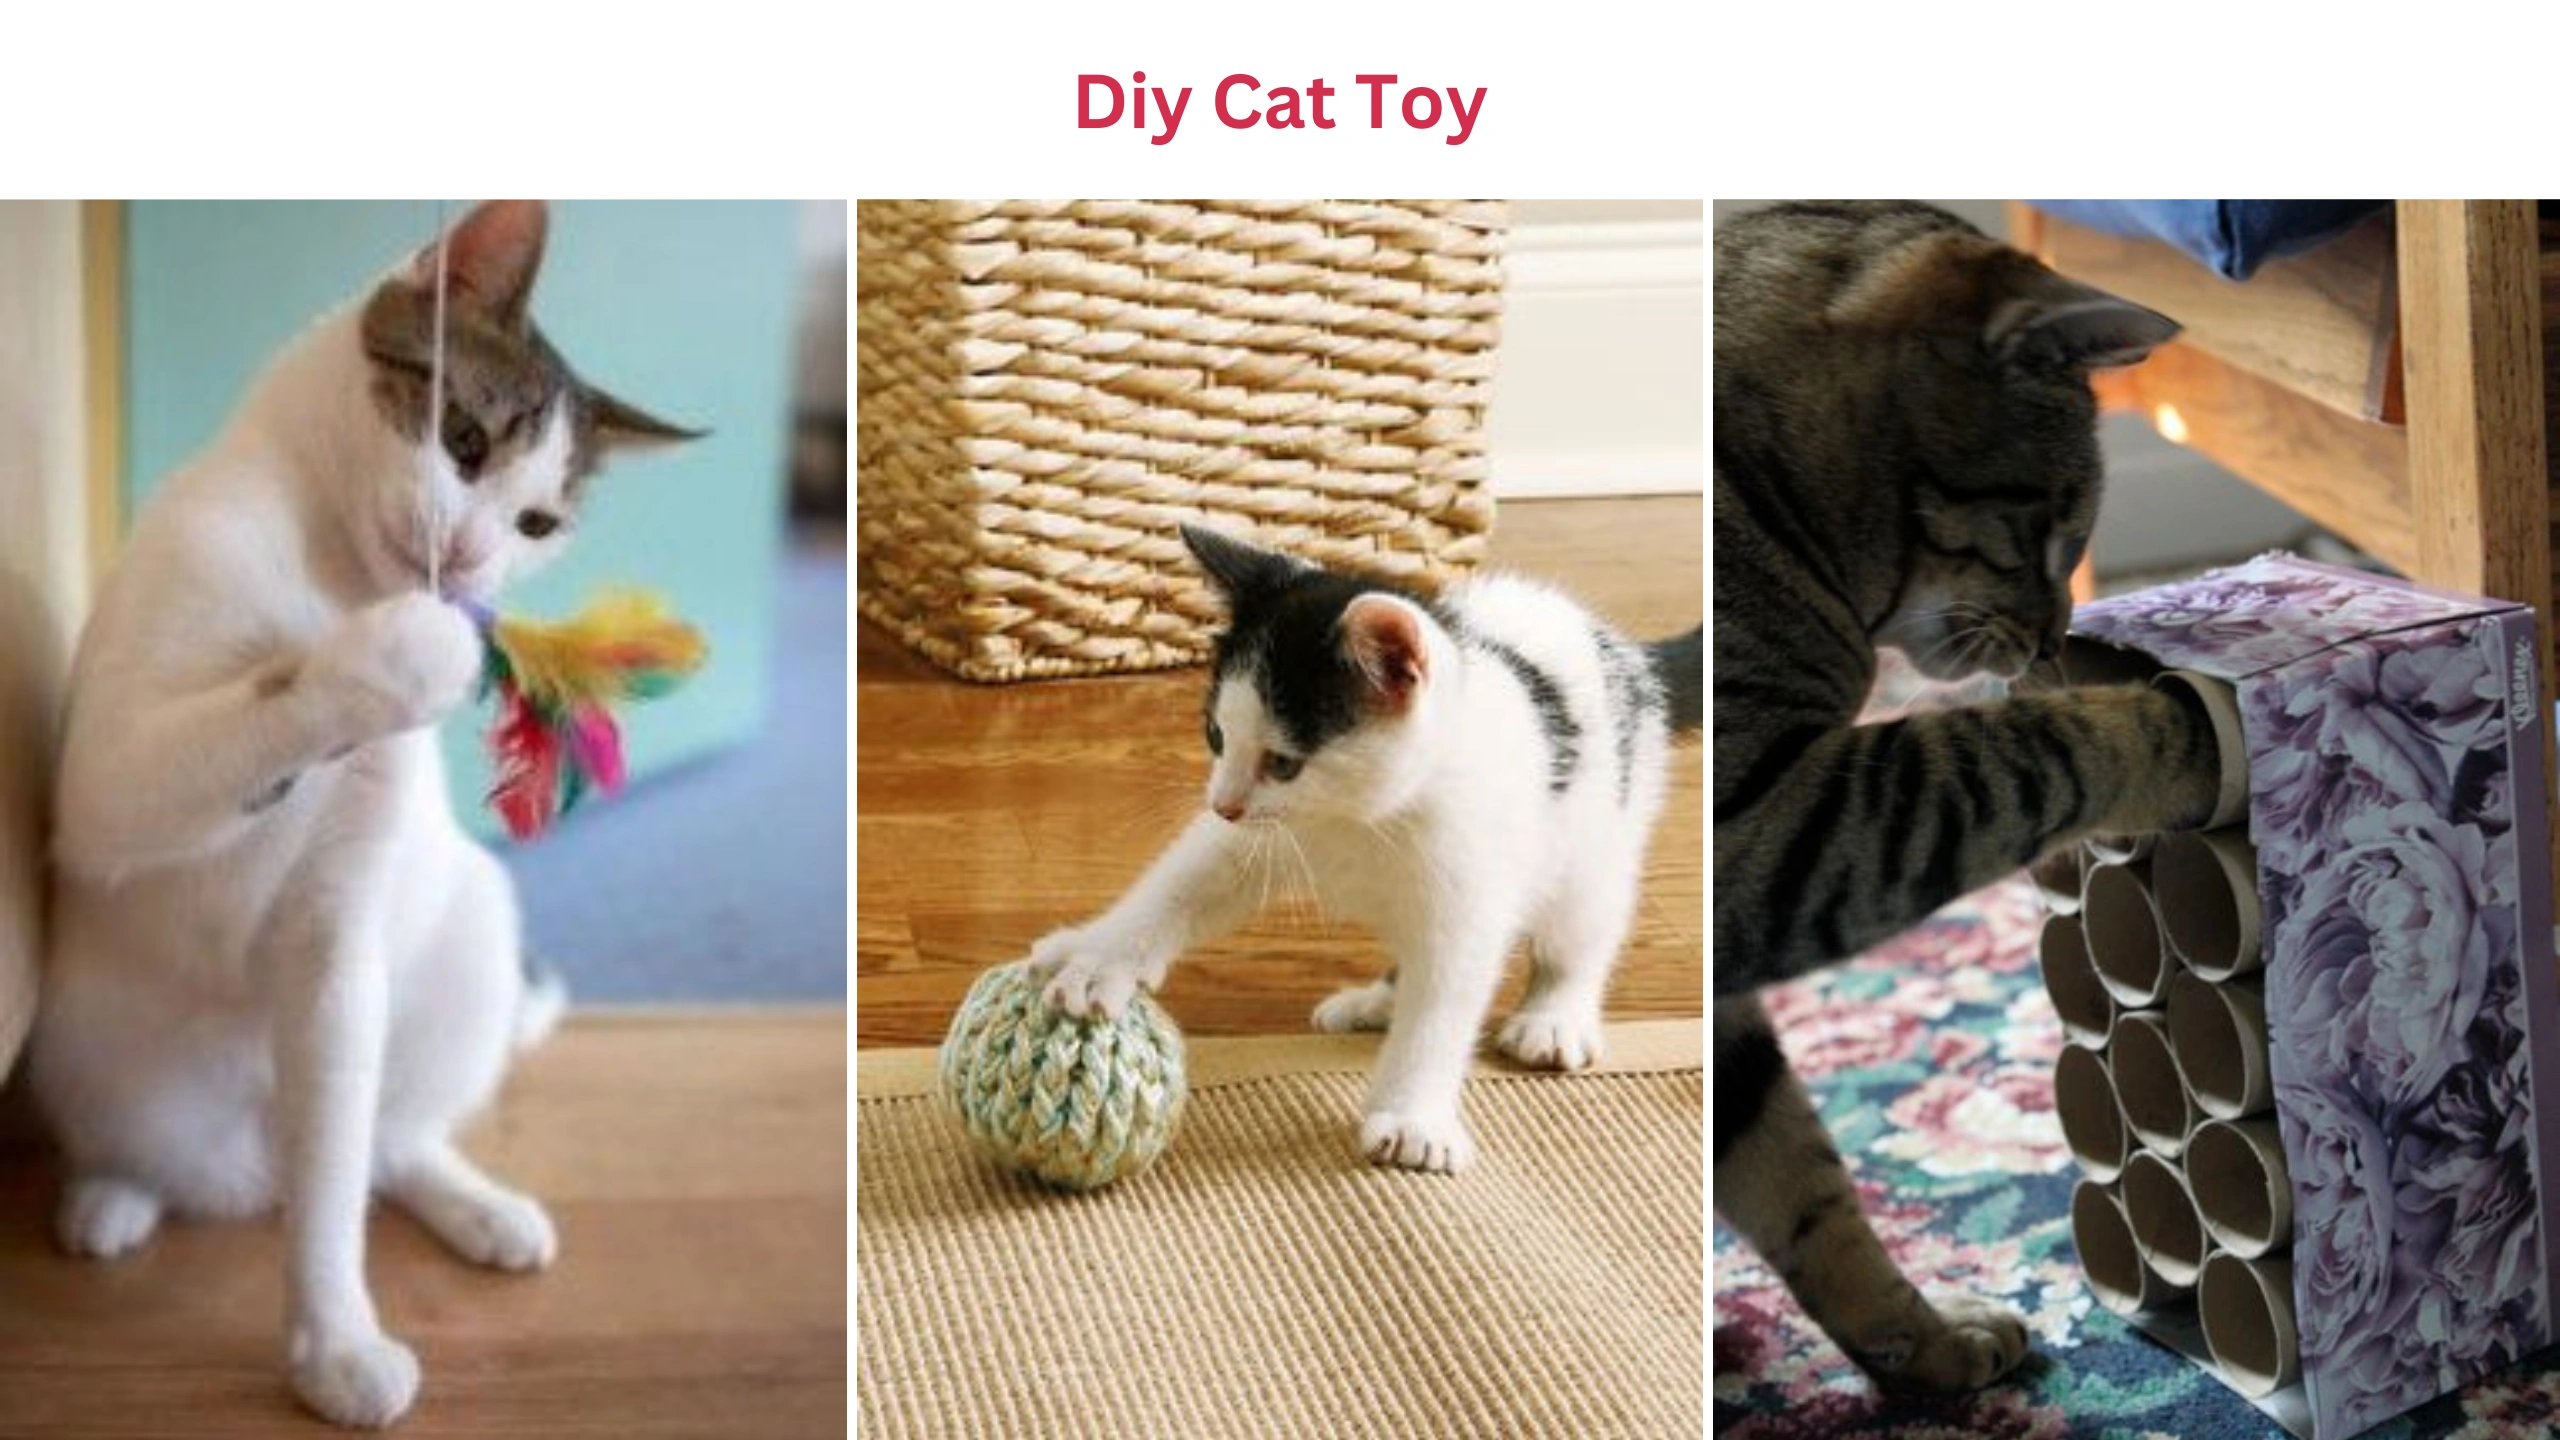 Diy cat toy